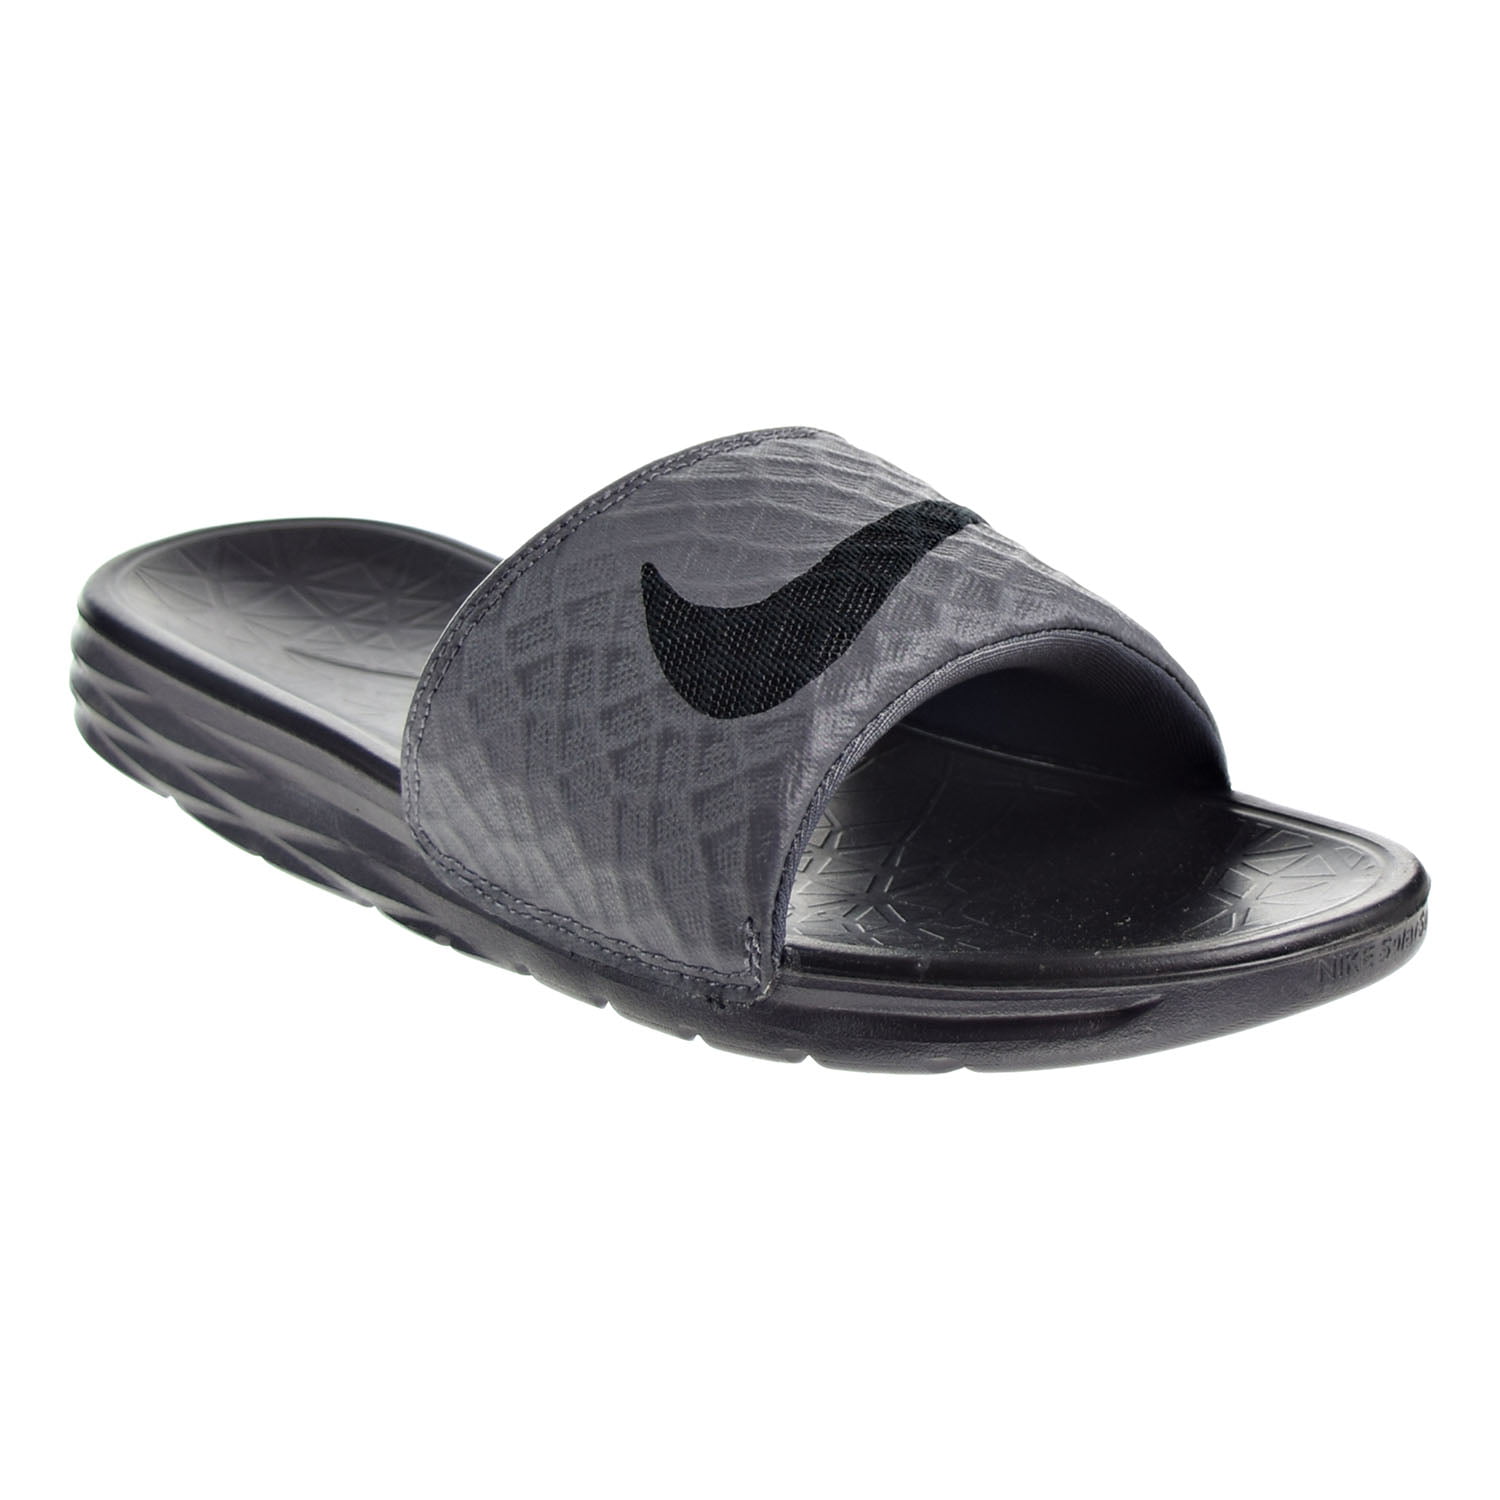 tunnel Tranquility er mere end Nike Benassi Solarsoft Men's Sandal Grey/Black 705474-090 (11 D(M) US) -  Walmart.com